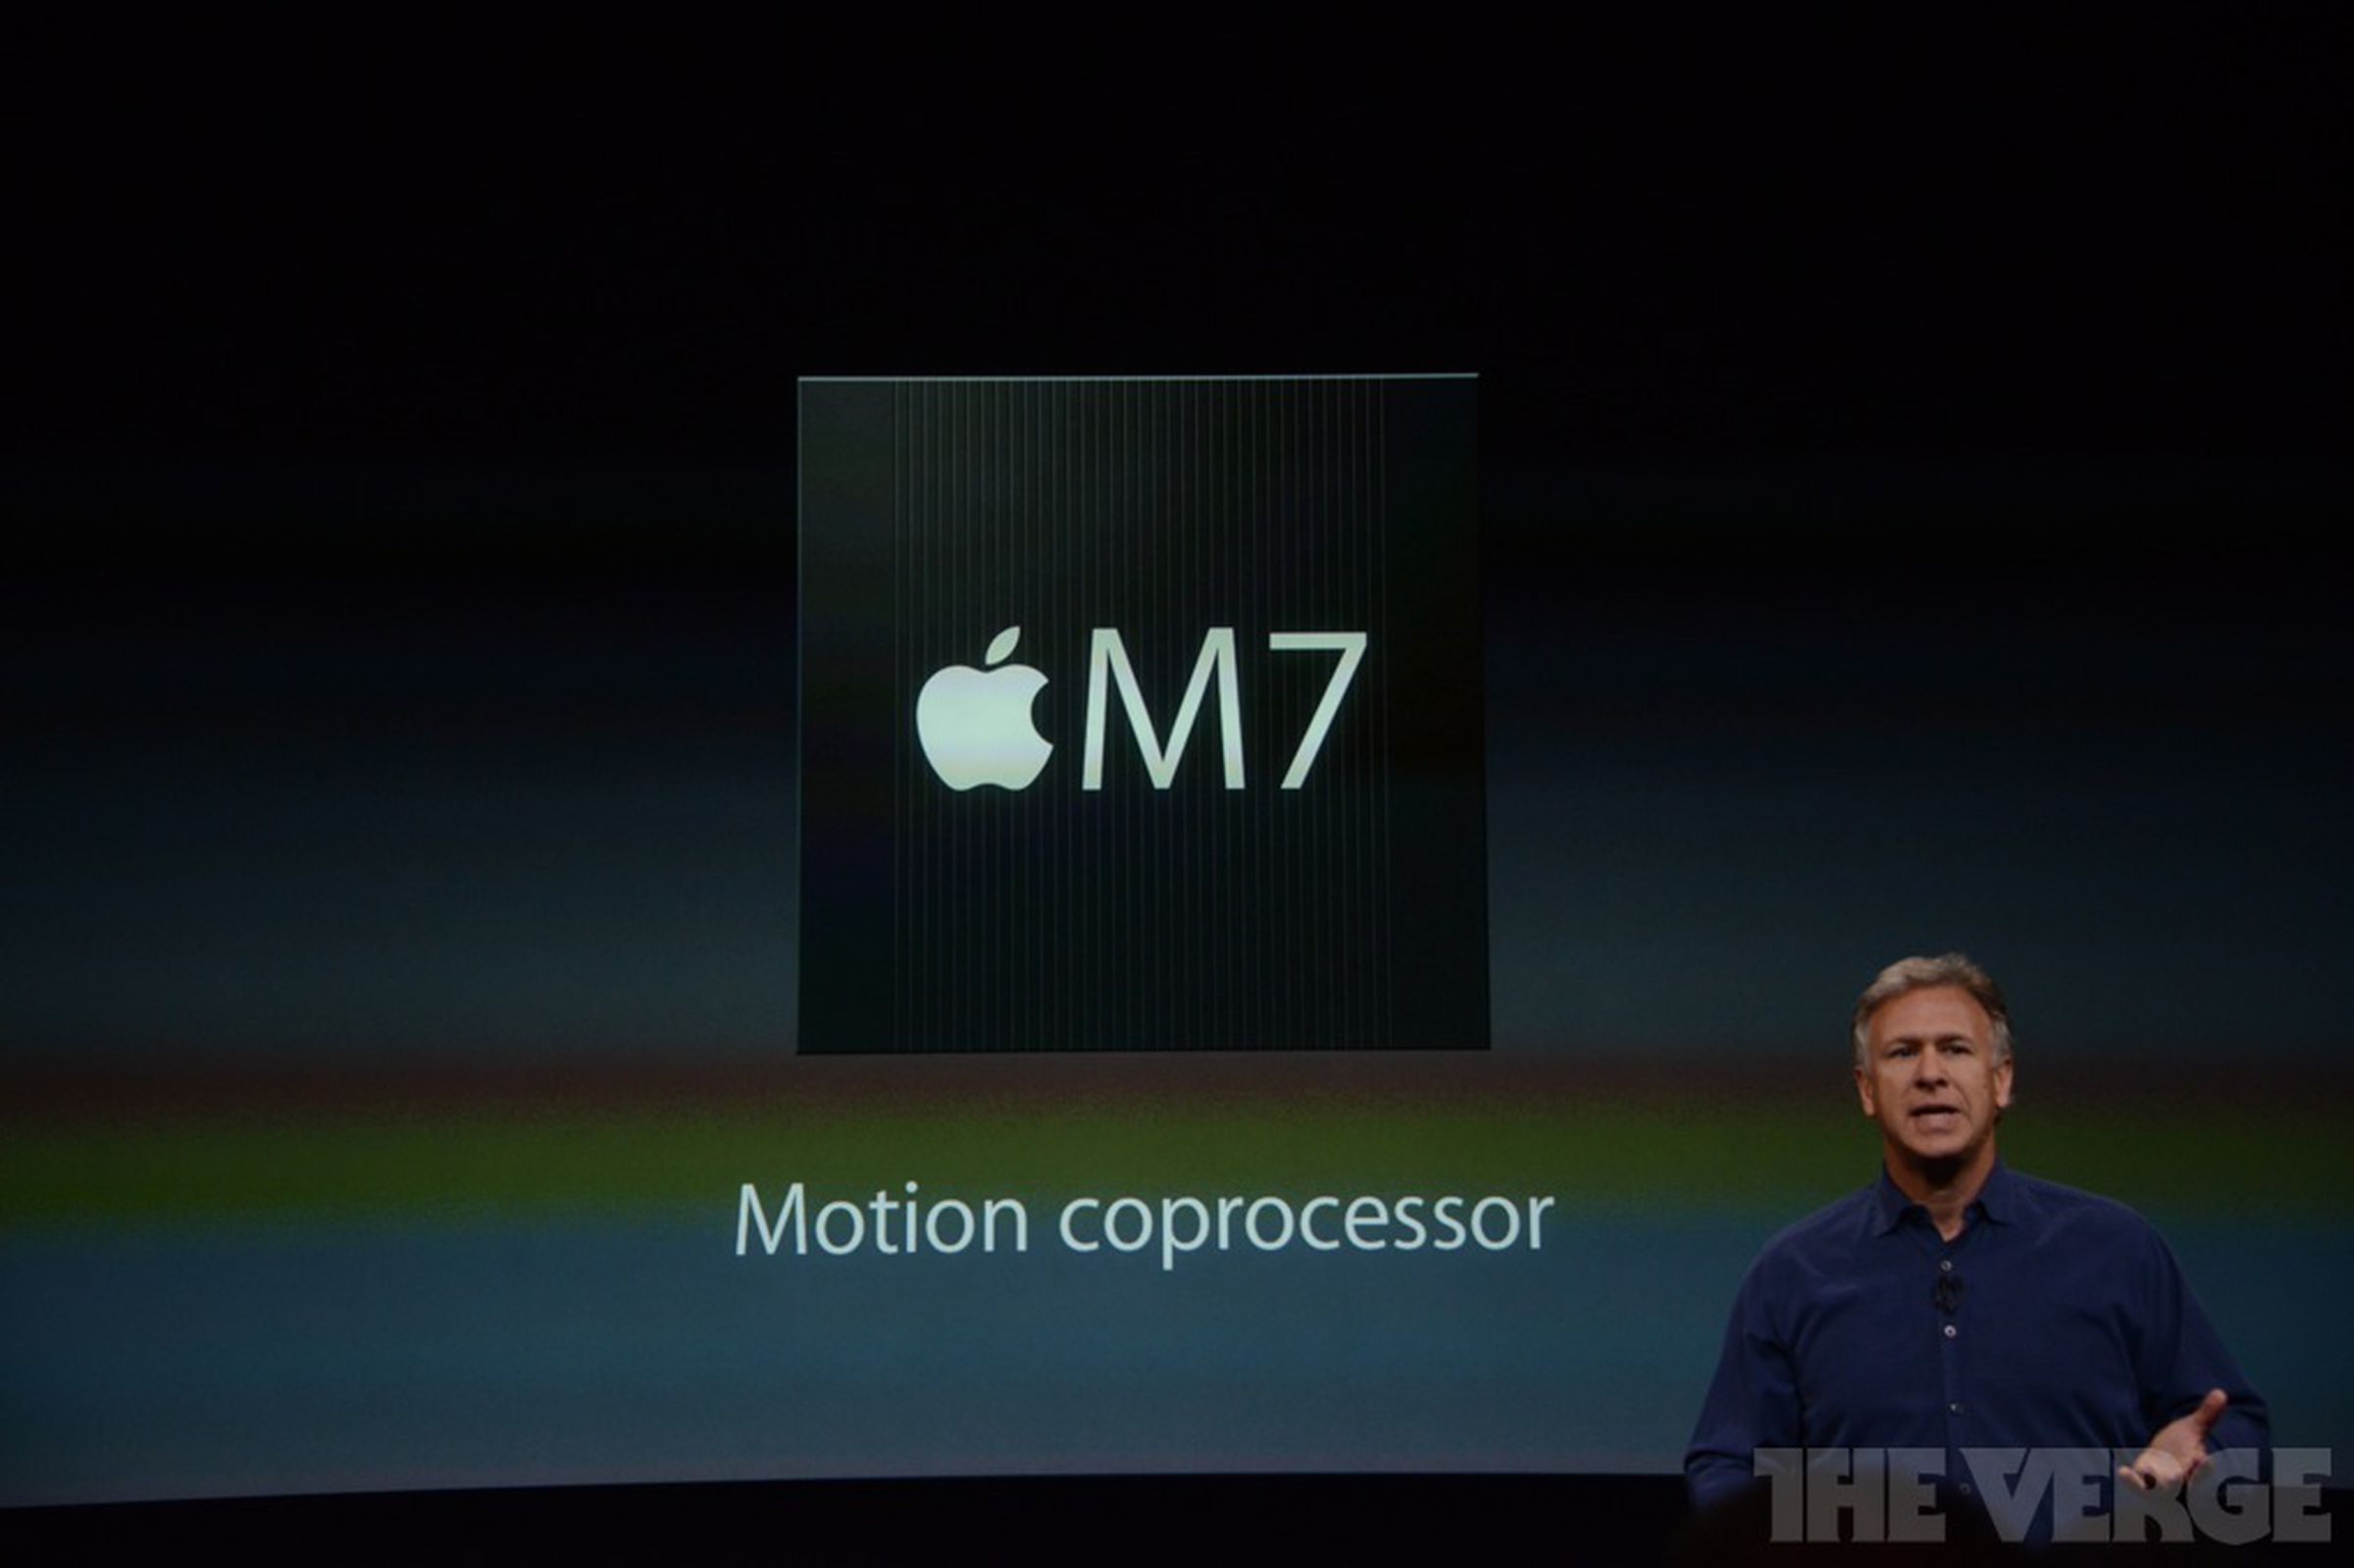 Apple A7 64-bit processor